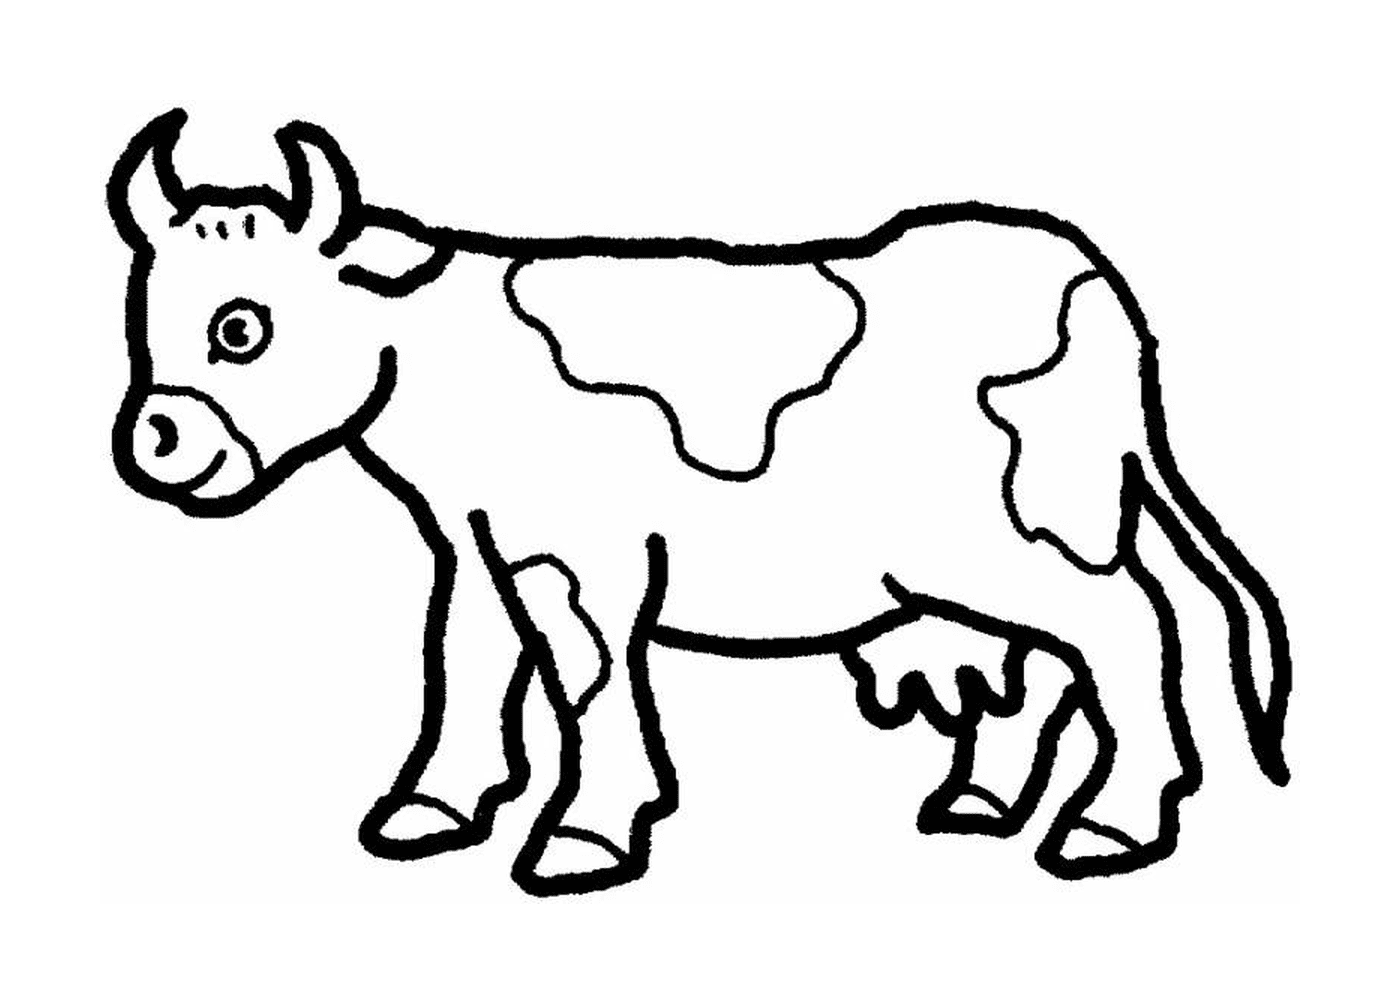  Uma vaca 